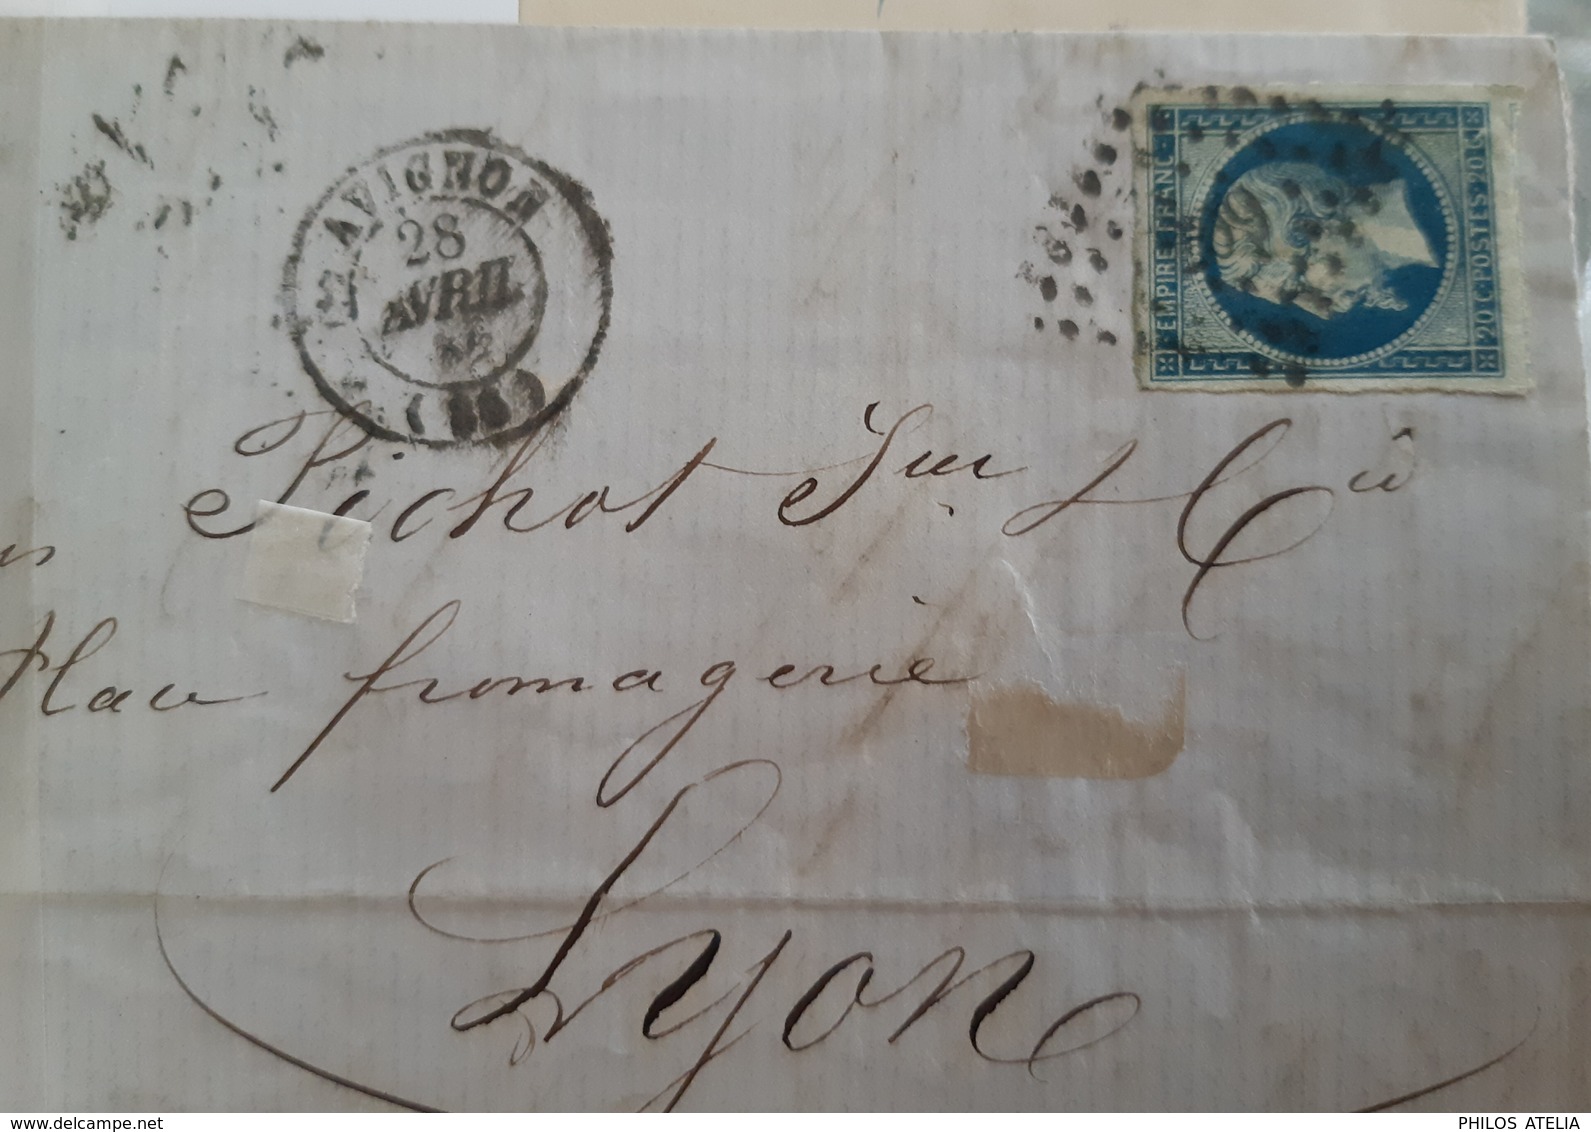 YT 14 Ba bleu sur vert Napoléon Empire type II seul sur lettre Oblitération petits chiffres + CAD T15 Avignon 28 4 1861